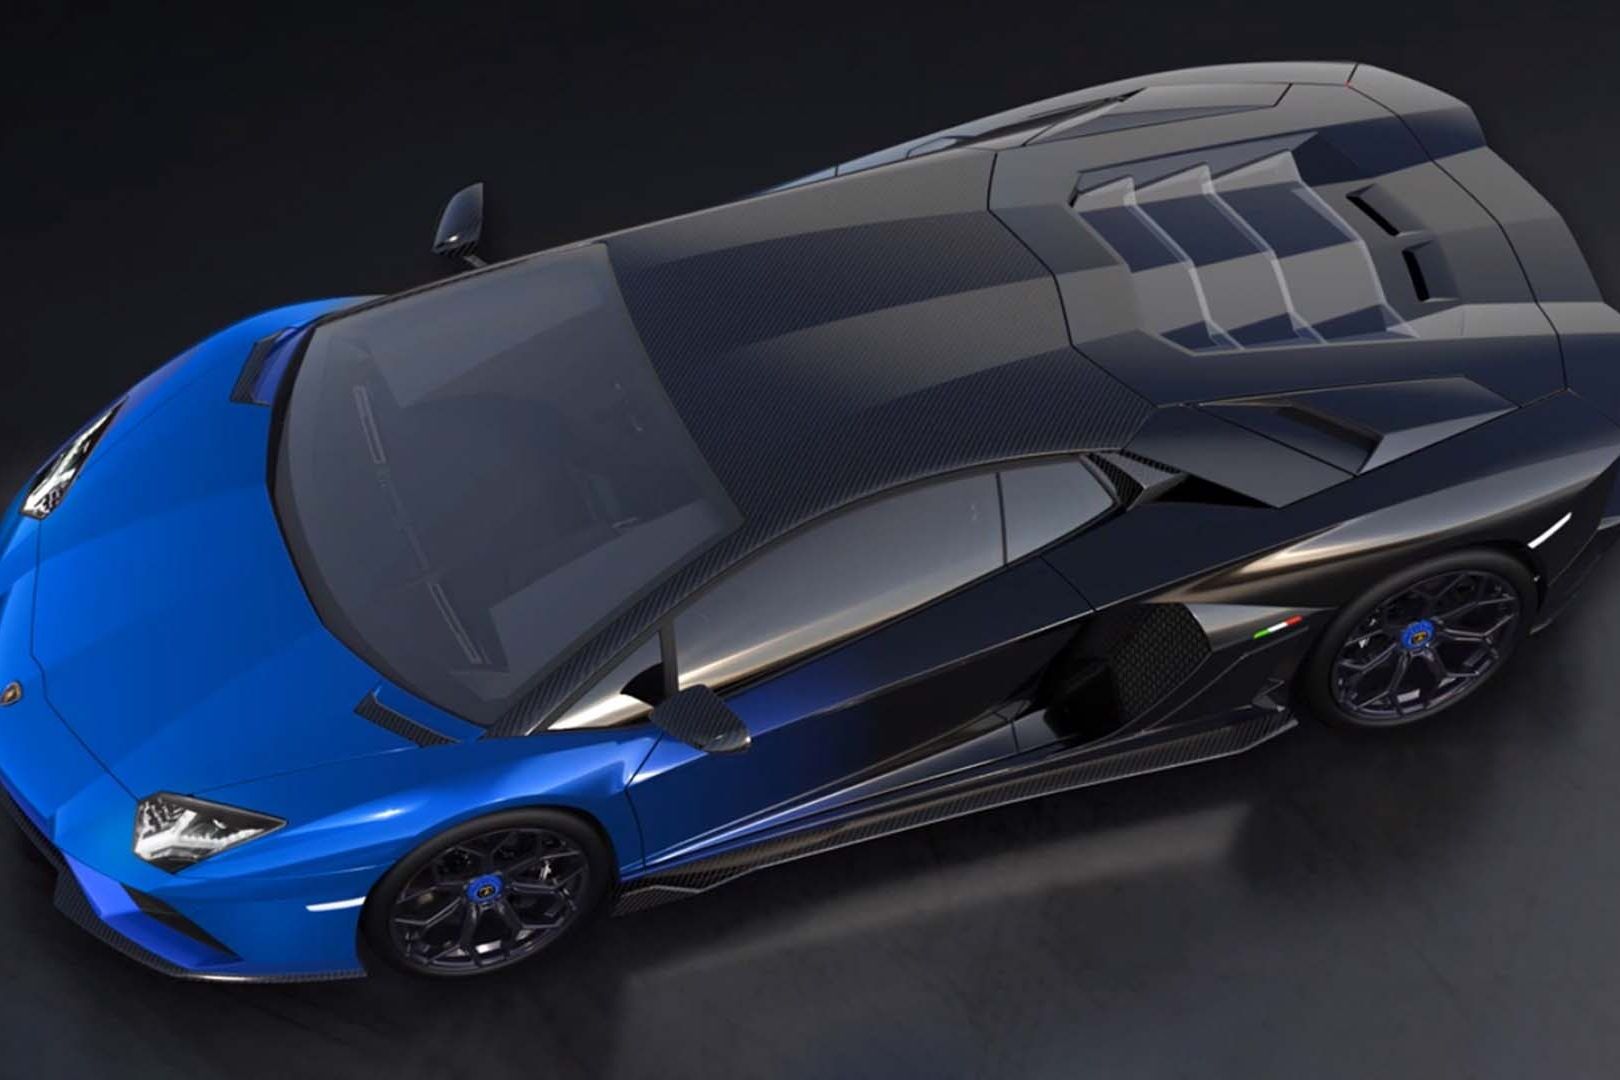 Эксклюзивный Lamborghini Aventador LP 780-4 Ultimae Coupé в паре с NFT 1.1 и выше будет выставлен на аукцион